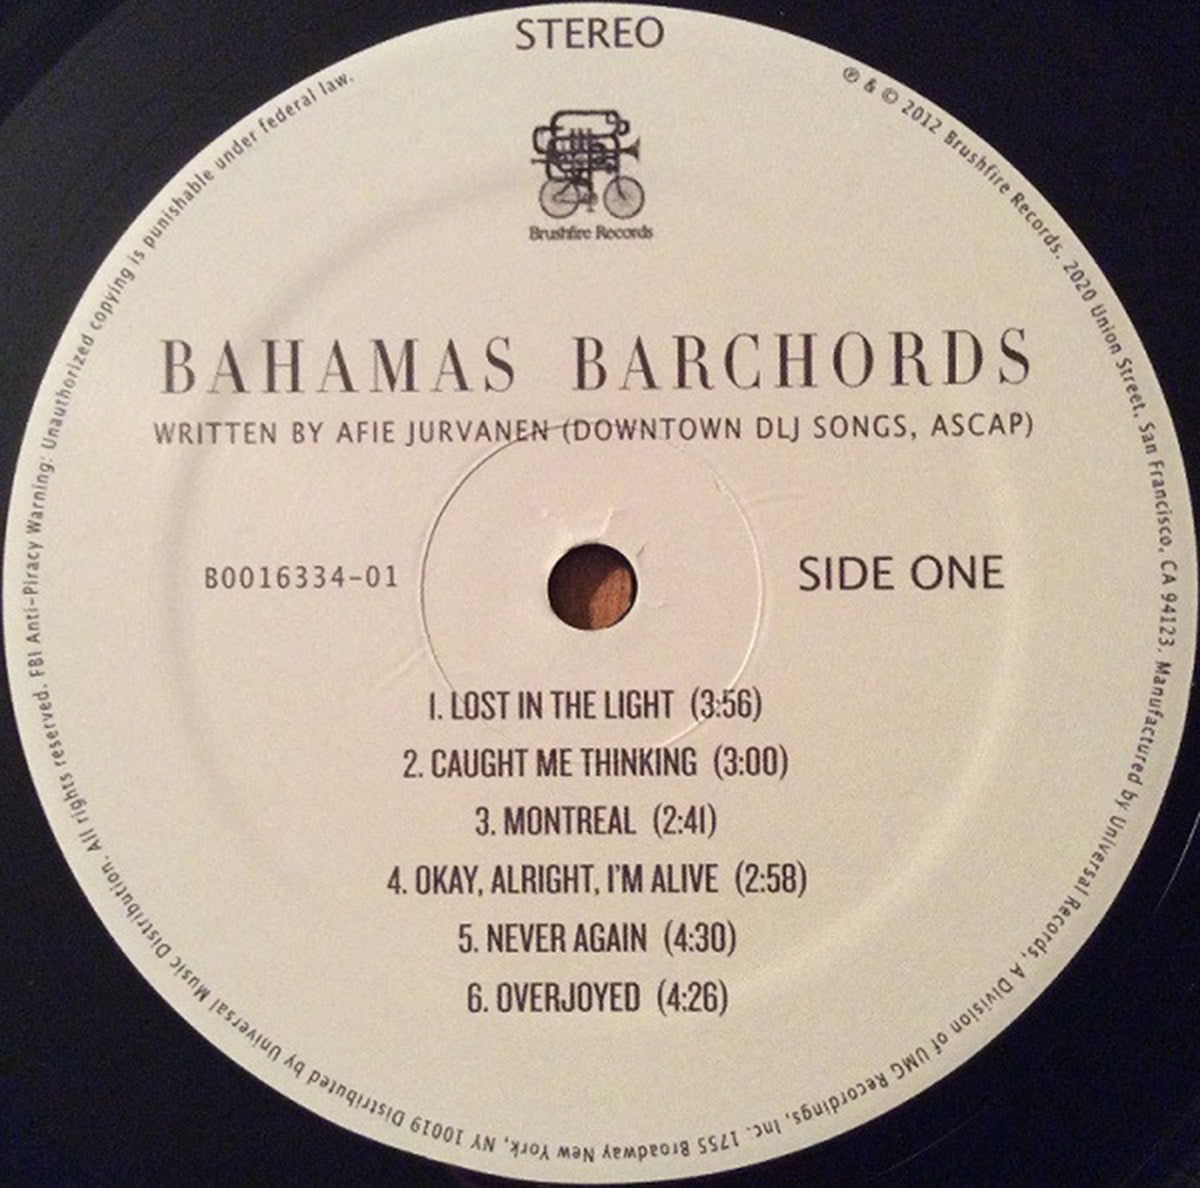 Bahamas – Barchords - Rare